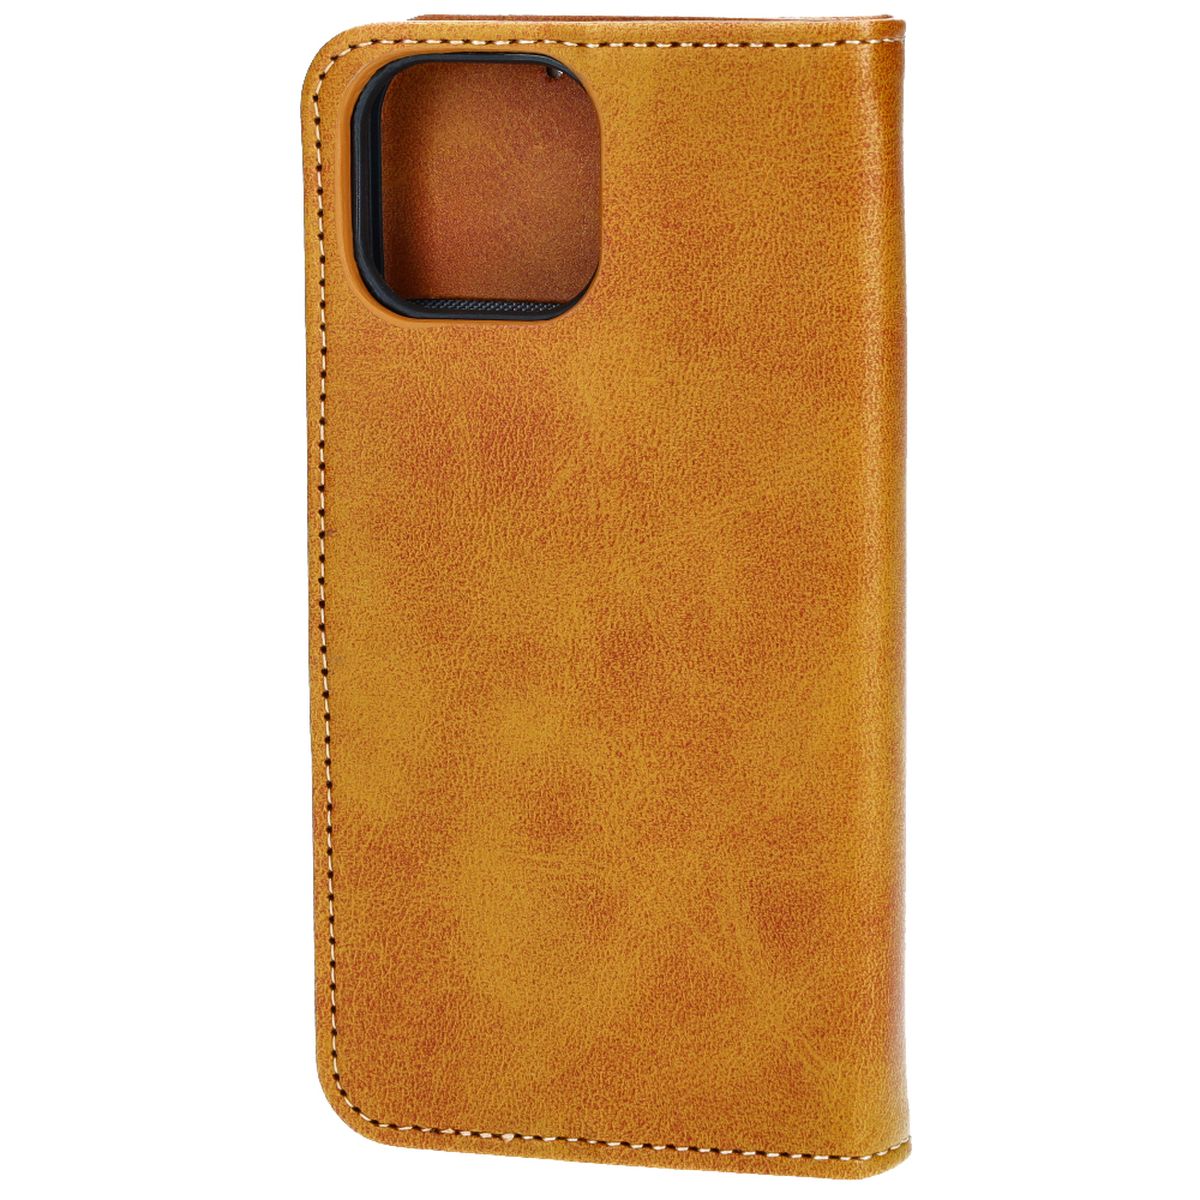 Schutzhülle Bizon Case Pocket für Apple iPhone 13 Mini, Braun